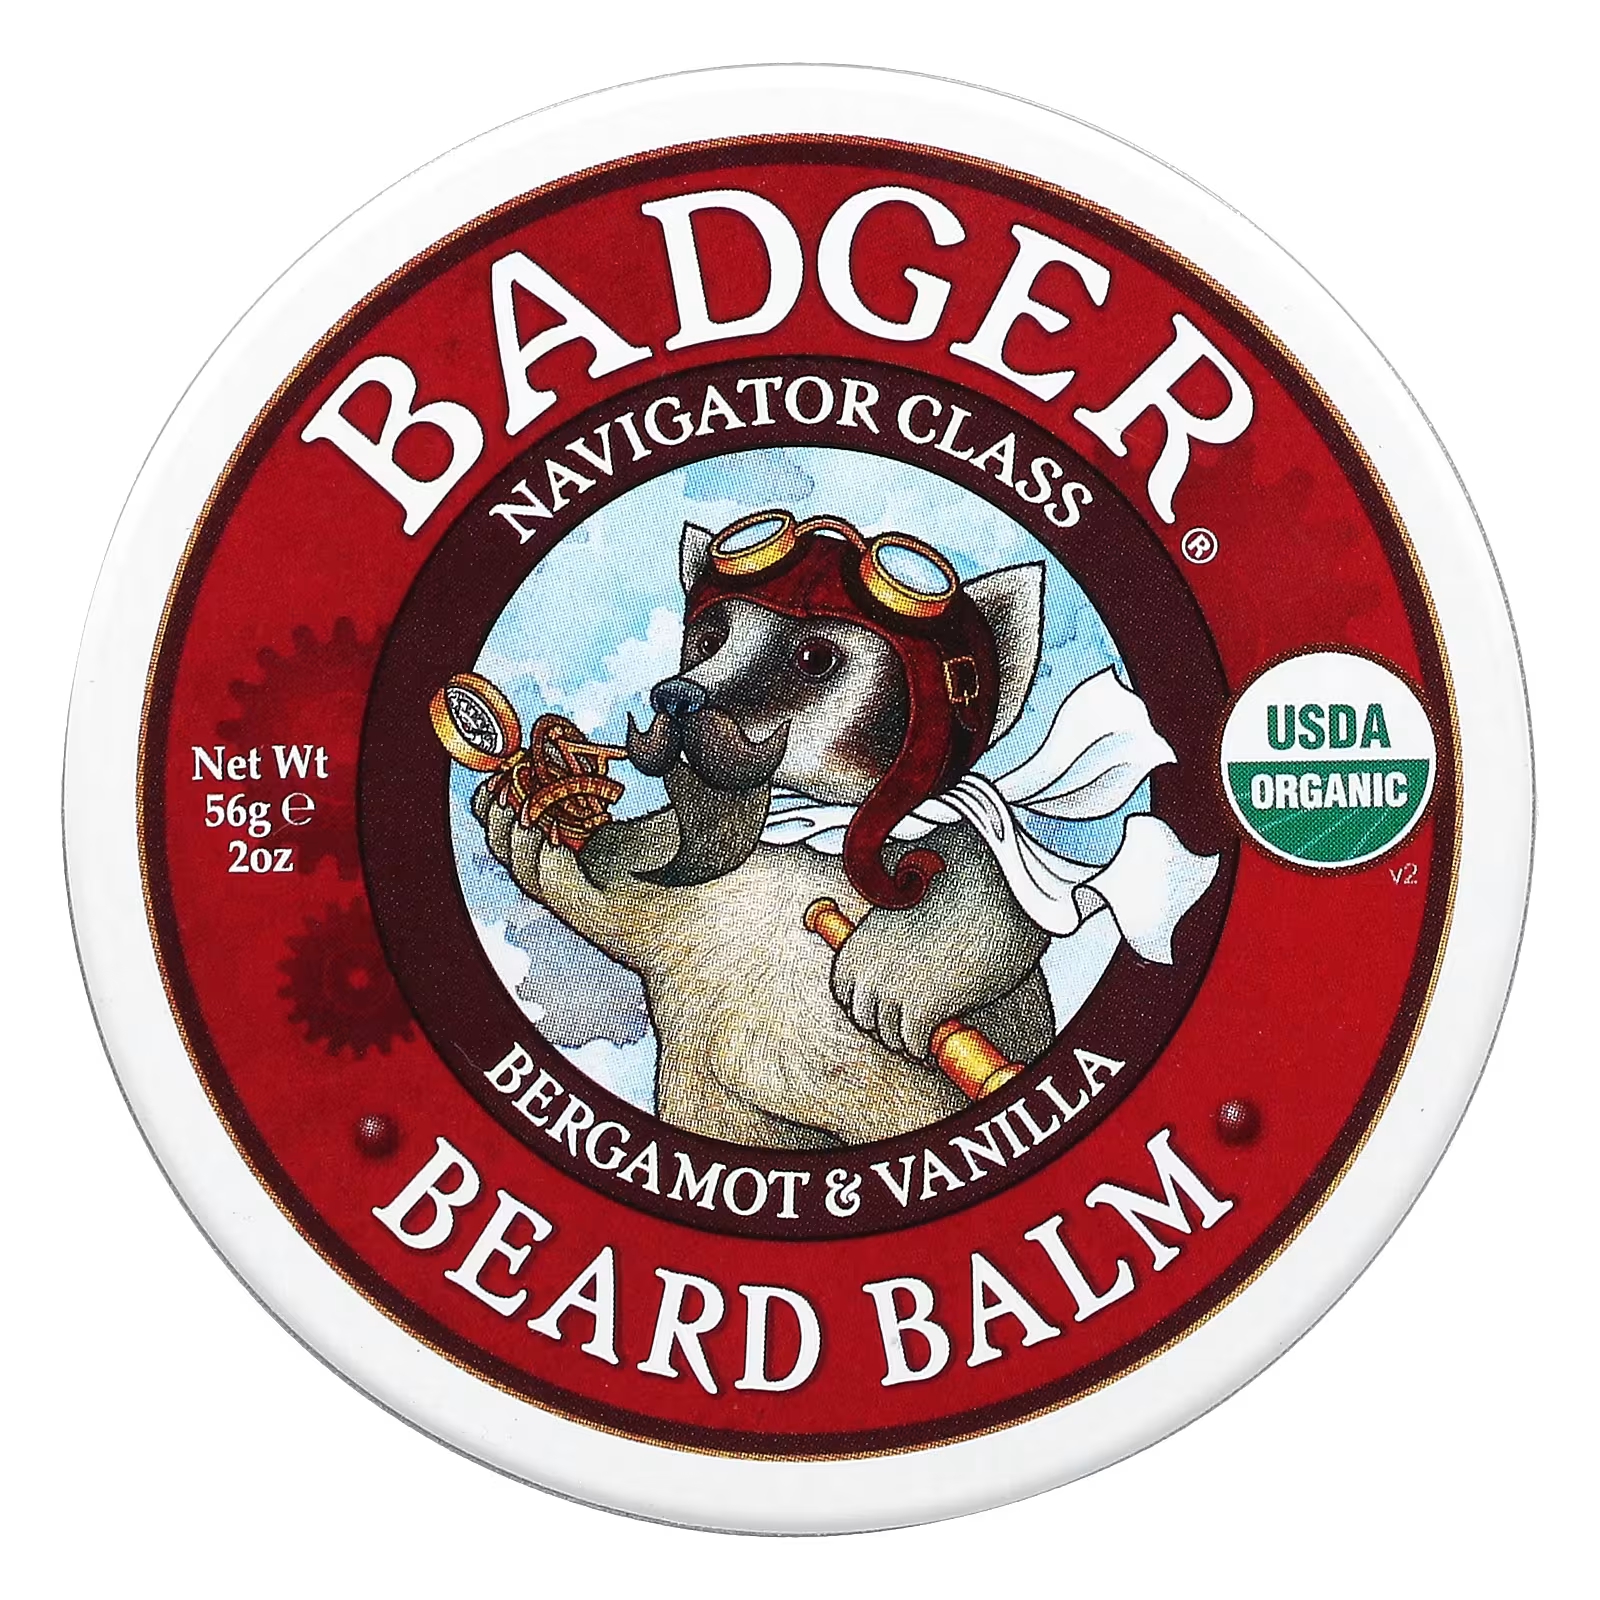 Бальзам для бороды Badger Company, 56 г badger company барсучий бальзам для рук 56 г 2 унции